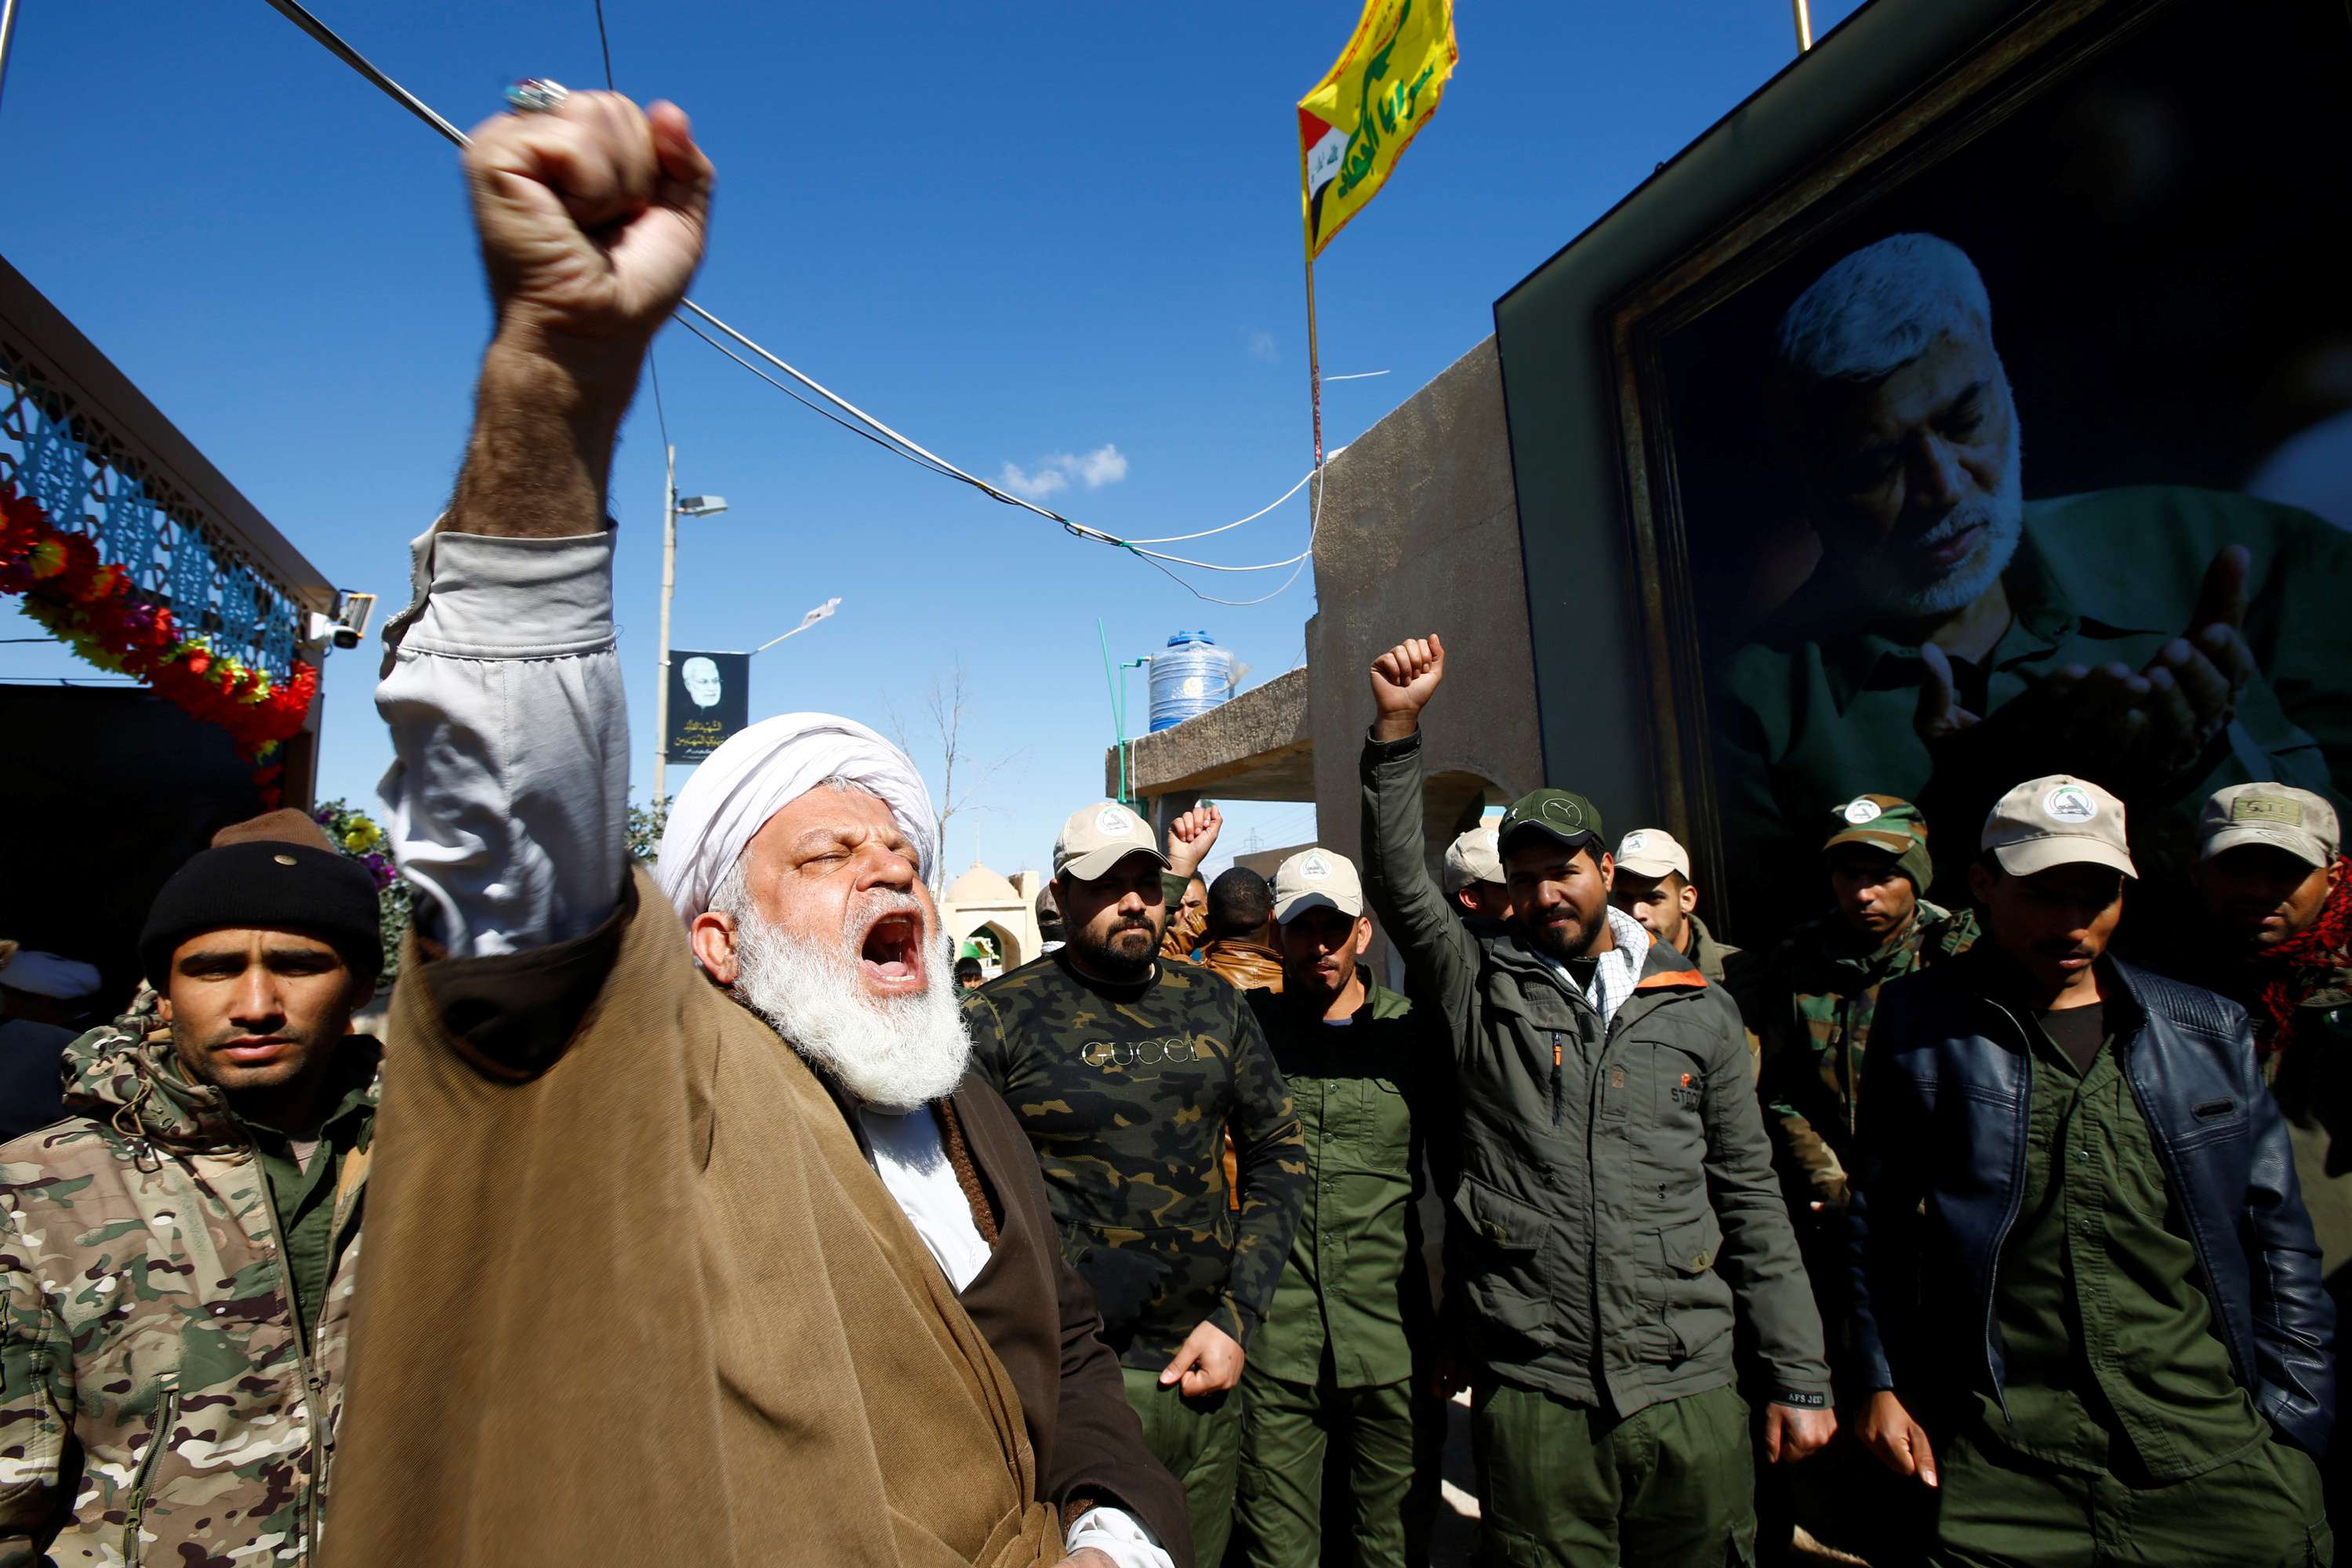 توقعات بردود افعال عسكرية من الميليشيات بدعم ايراني